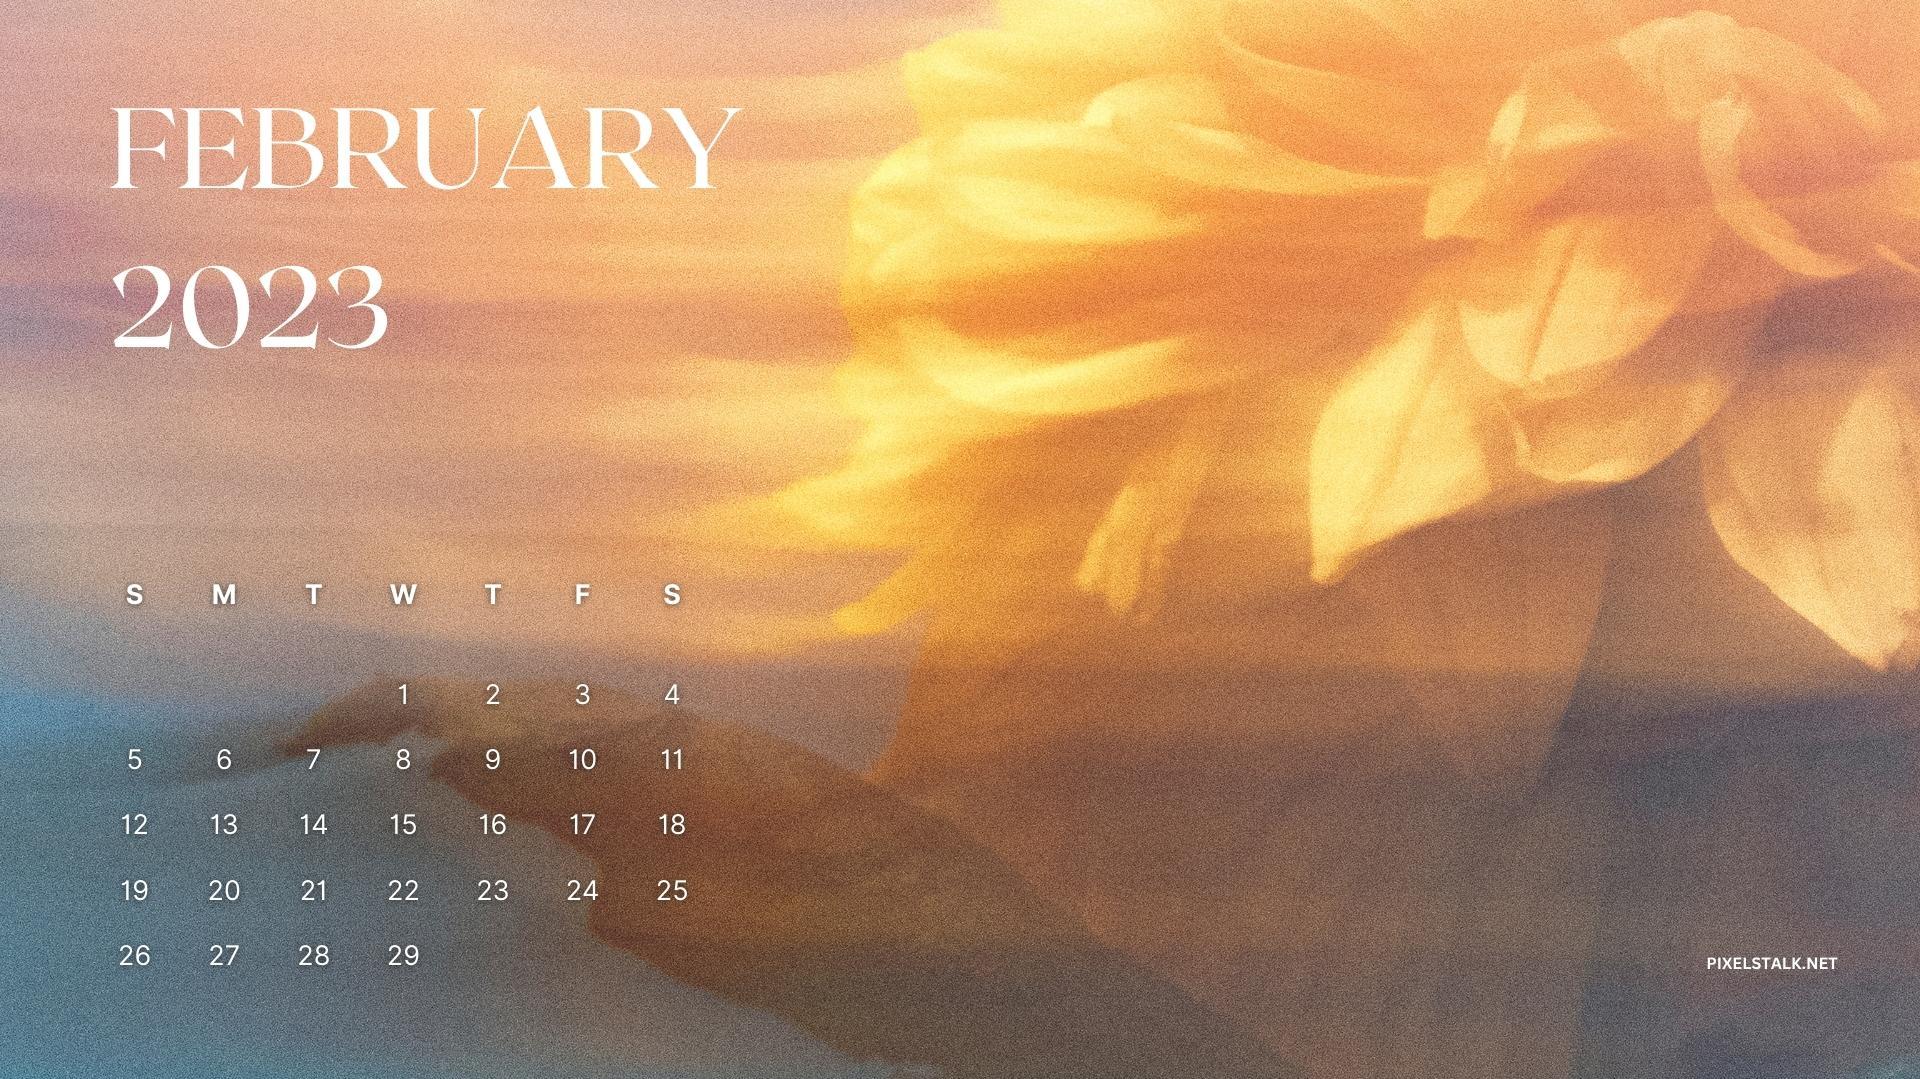 February 2023 Calendar Background for Desktop